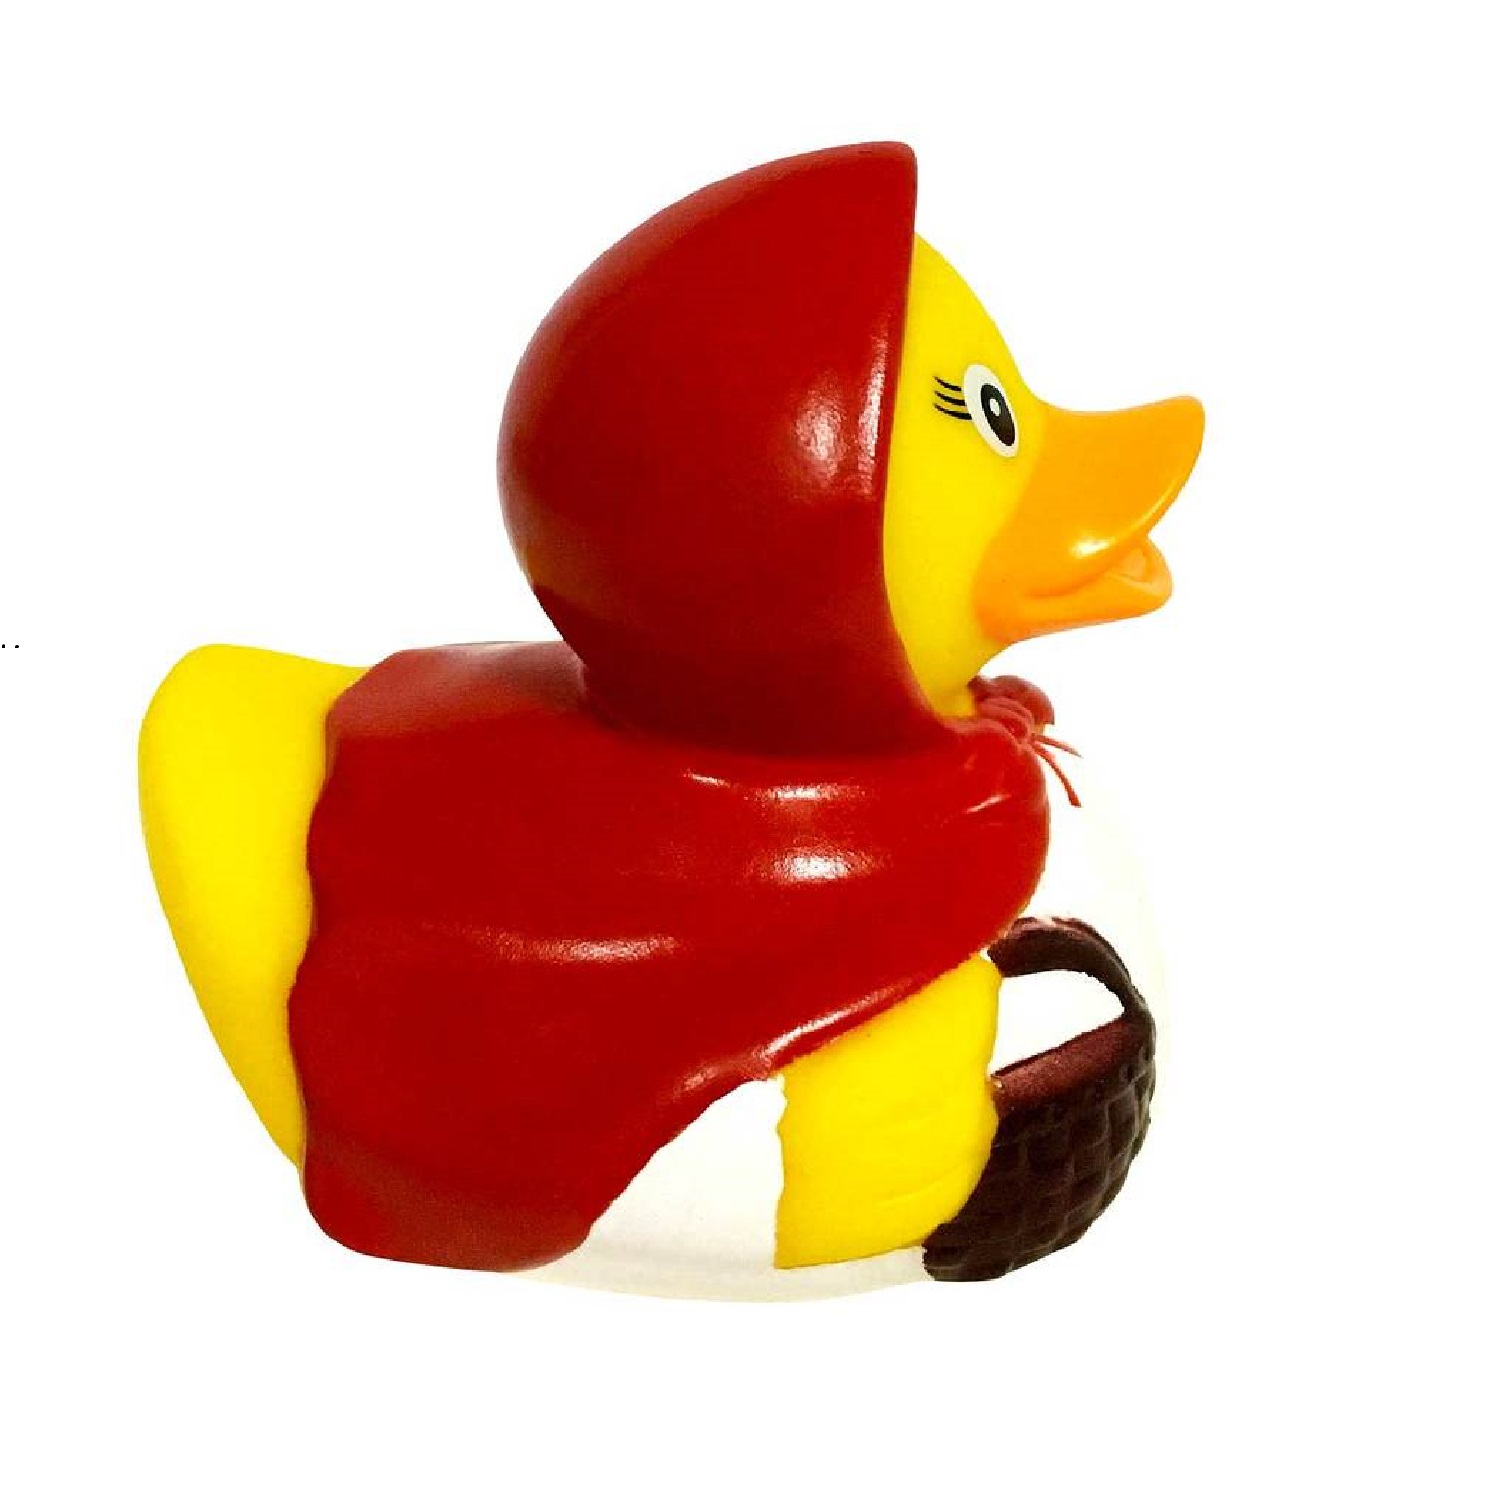 Игрушка Funny ducks для ванной Красная шапочка уточка 1858 - фото 3